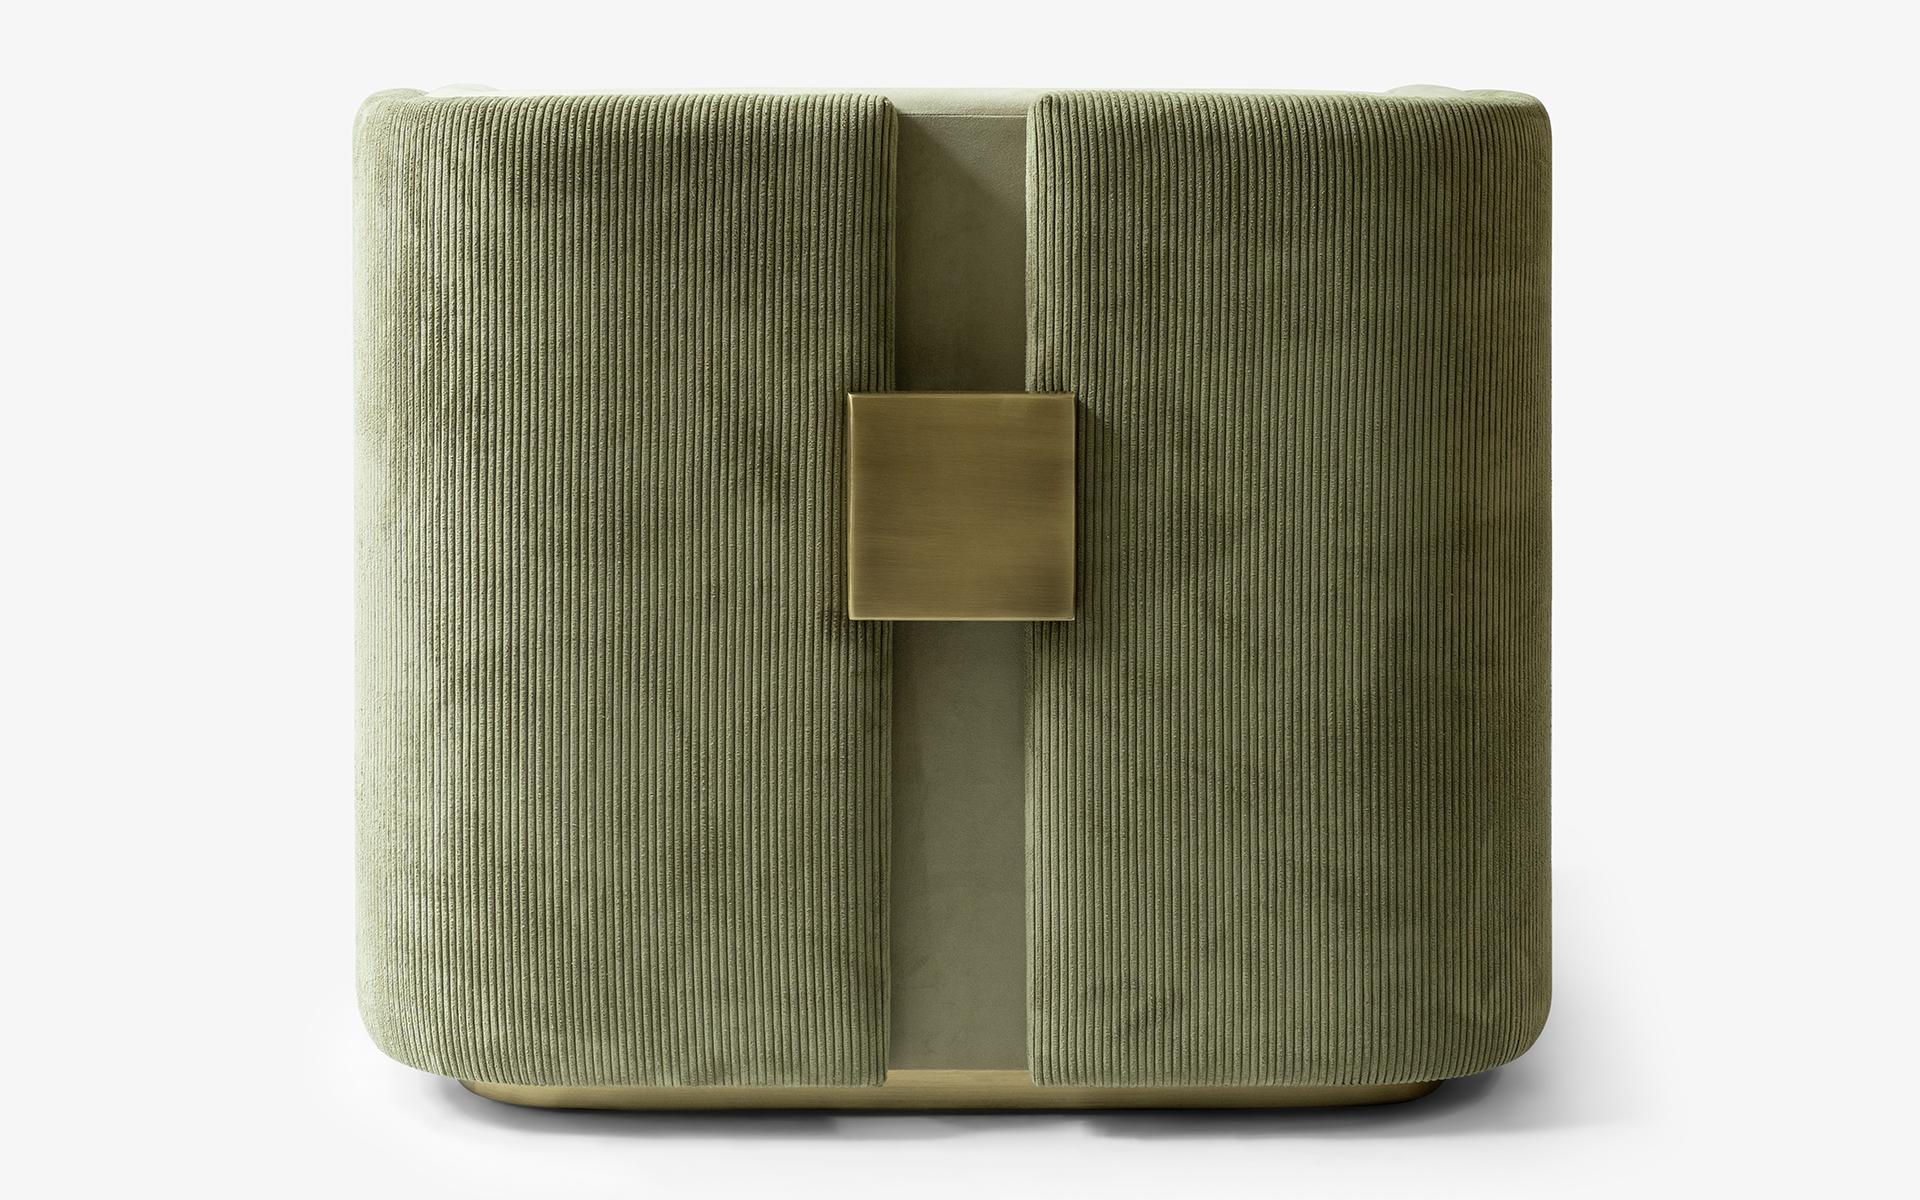 La série de fauteuils PAPILLONNE en velours côtelé présente une approche moderne du design et une variété de matériaux qui peuvent rehausser n'importe quel espace. L'aspect minimaliste de la série de tissus peut donner à n'importe quelle pièce un